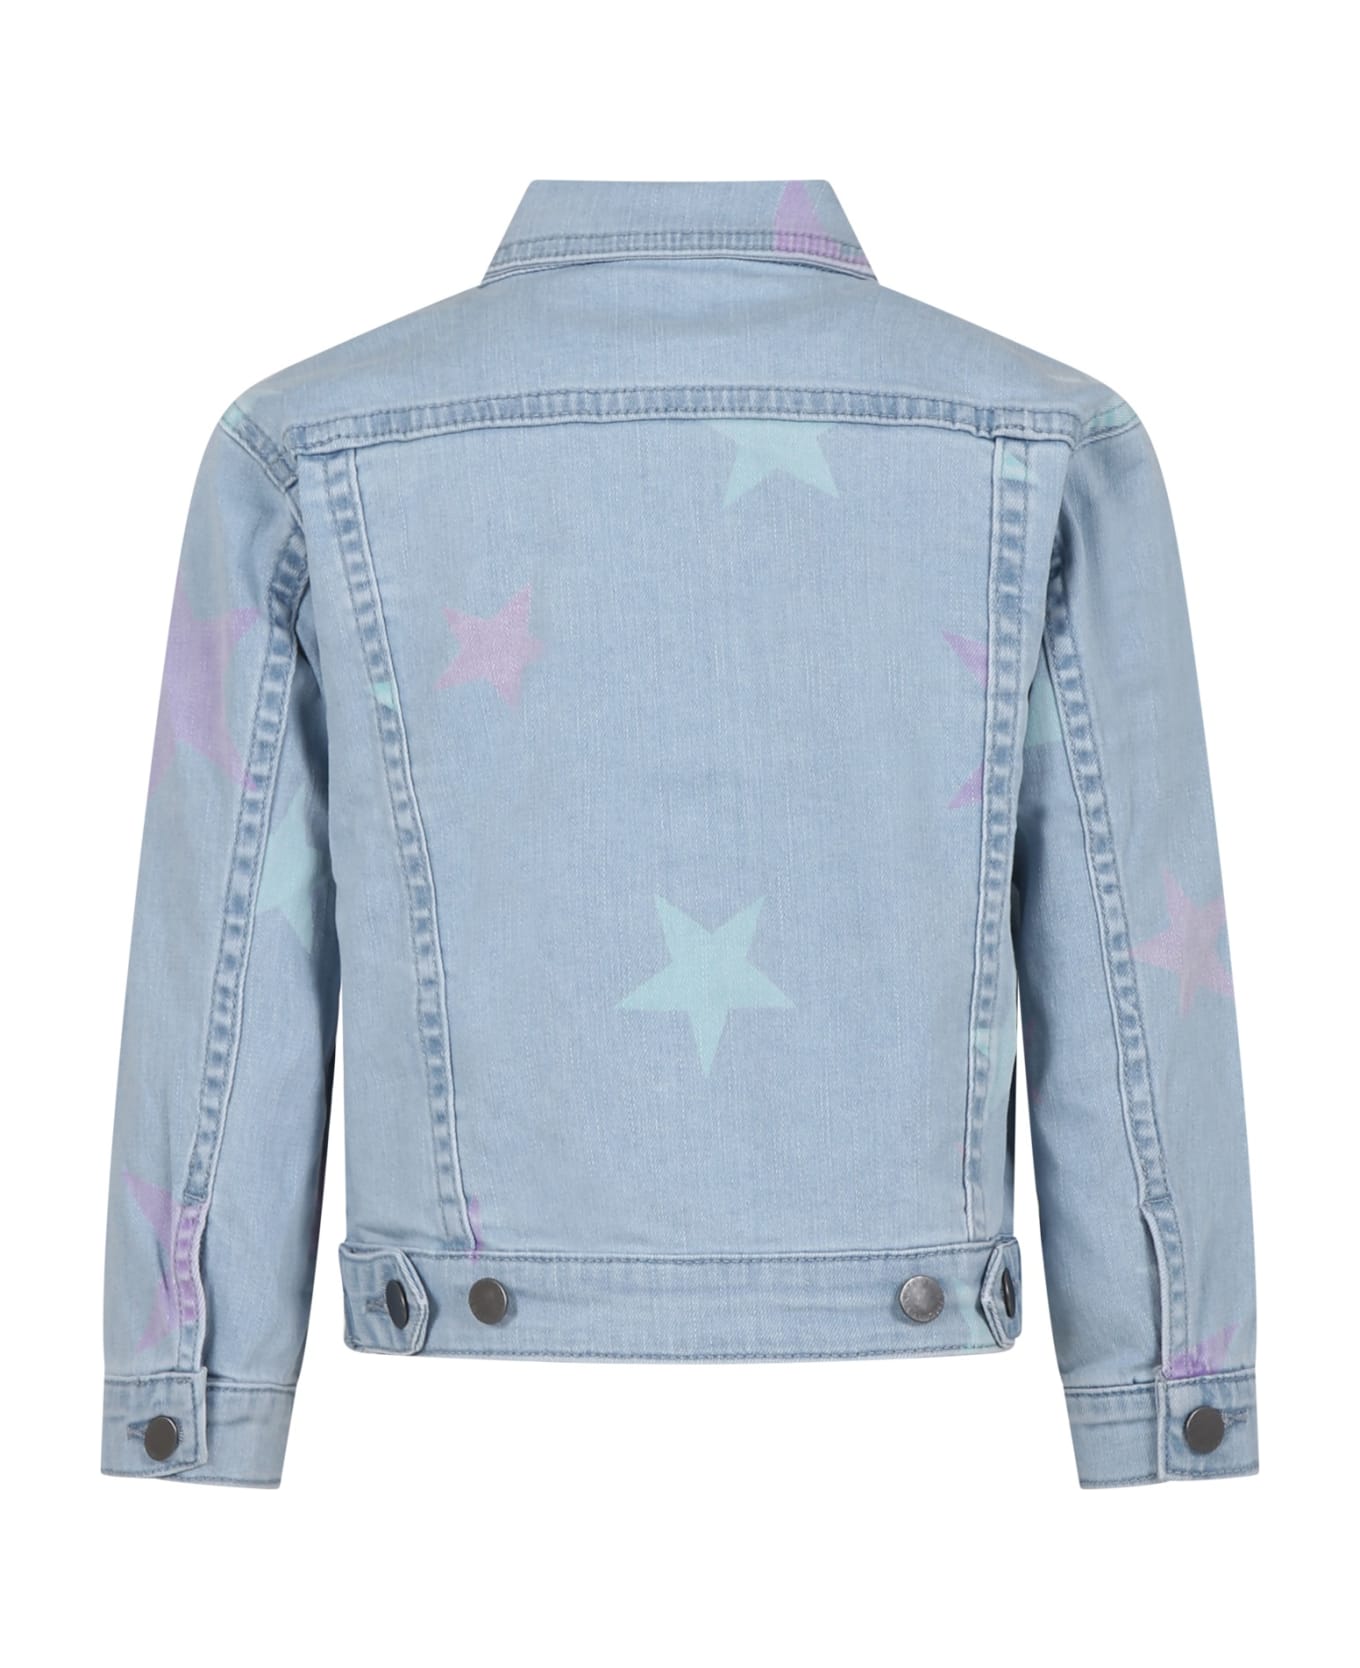 Stella McCartney Kids Denim Jacket For Girl With All-over Stars - Denim